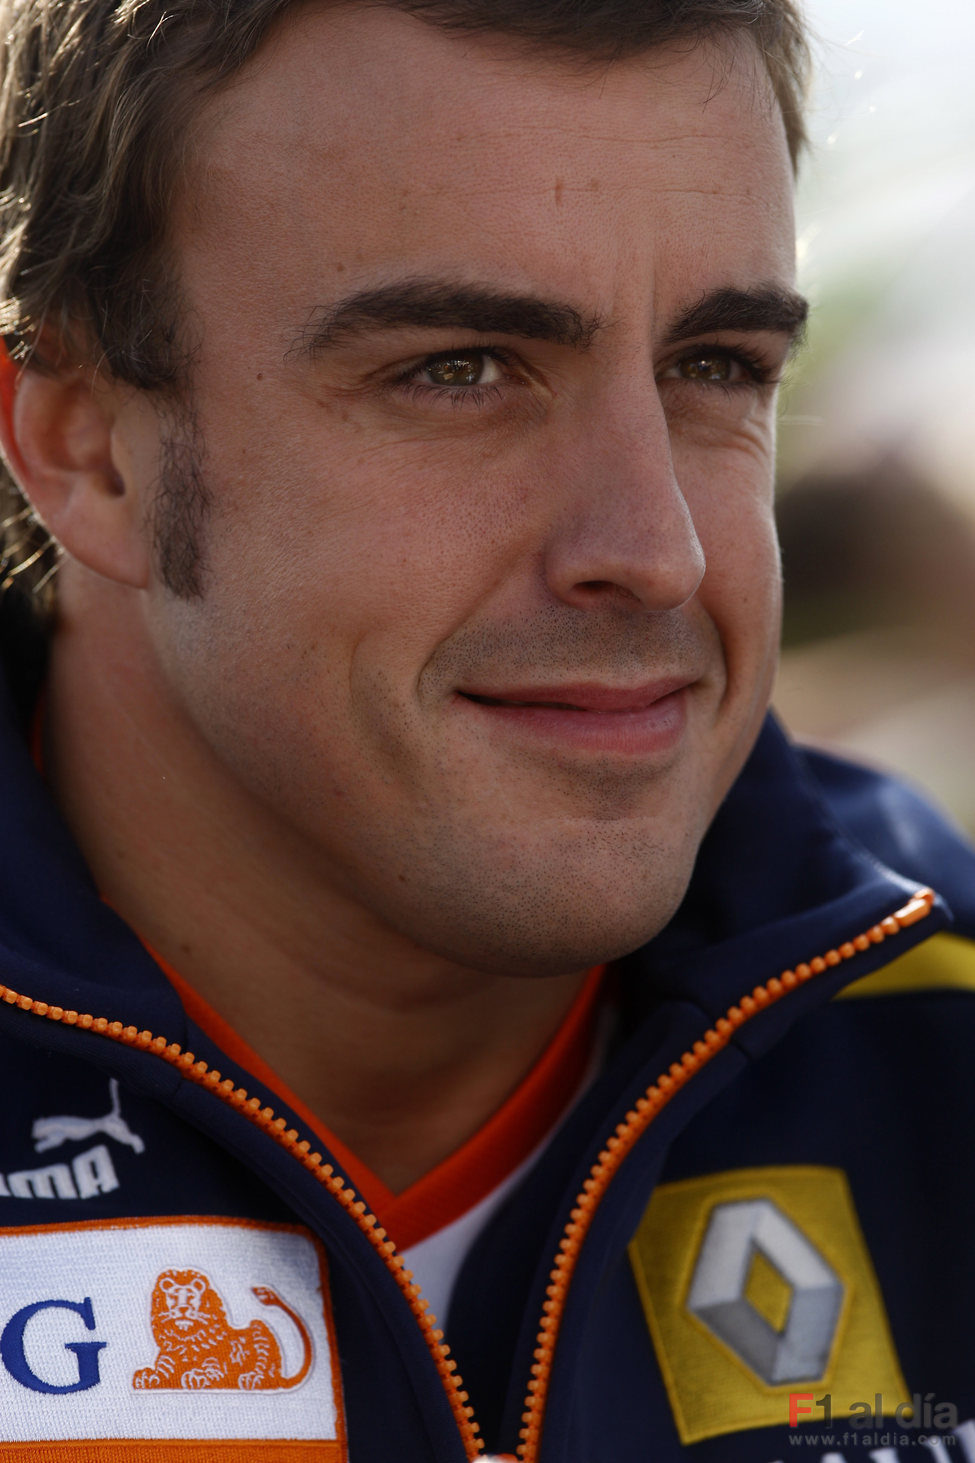 Alonso en Silverstone